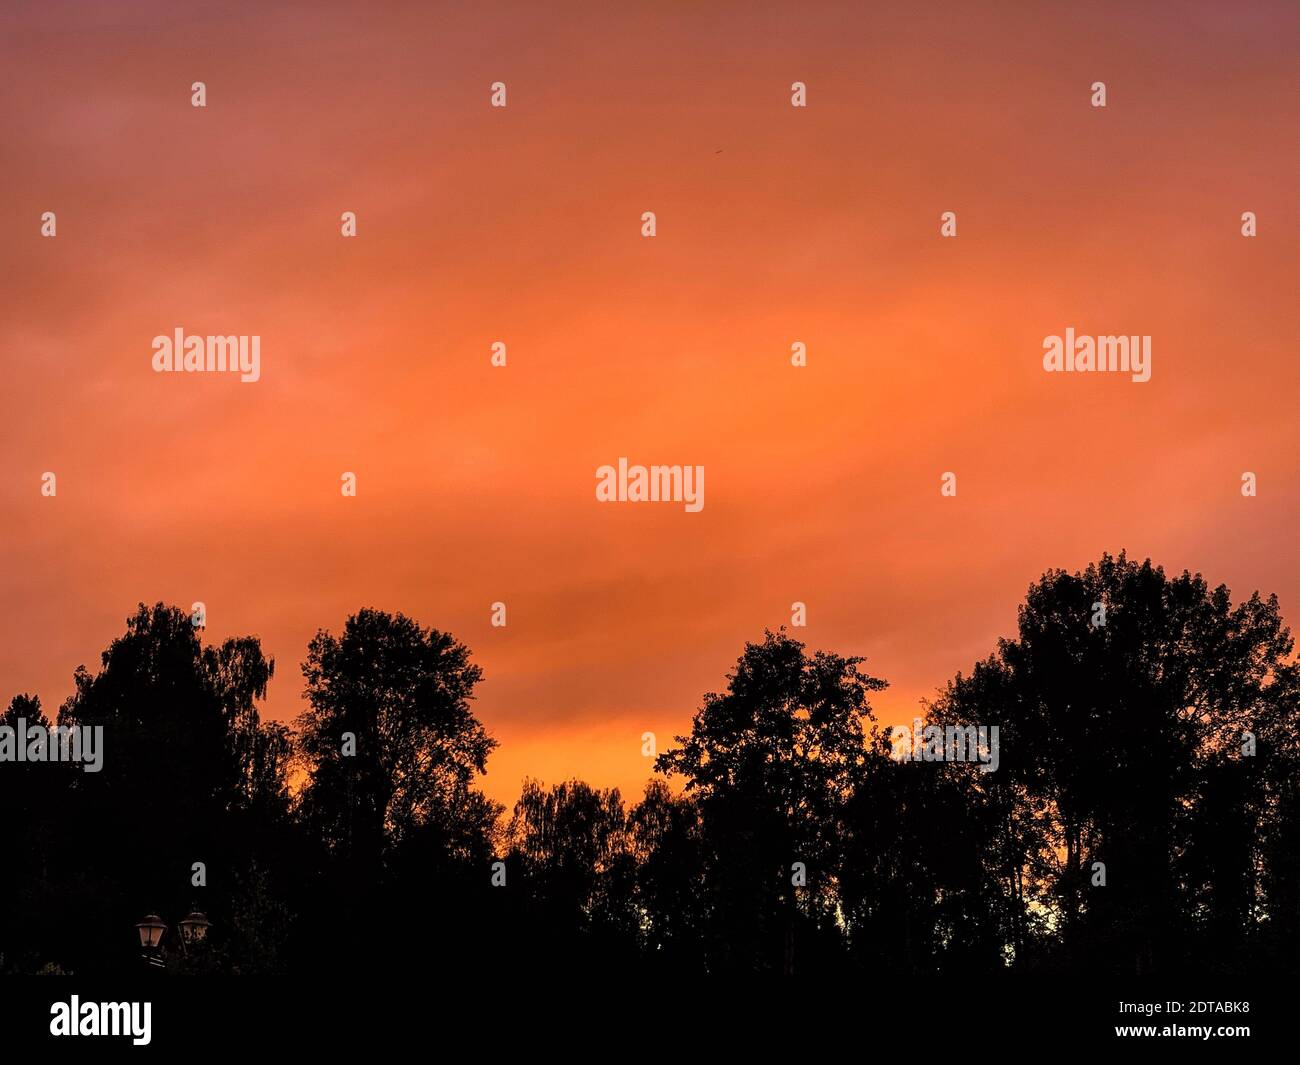 Basso angolo vista di Silhouette alberi contro il cielo arancione Foto Stock